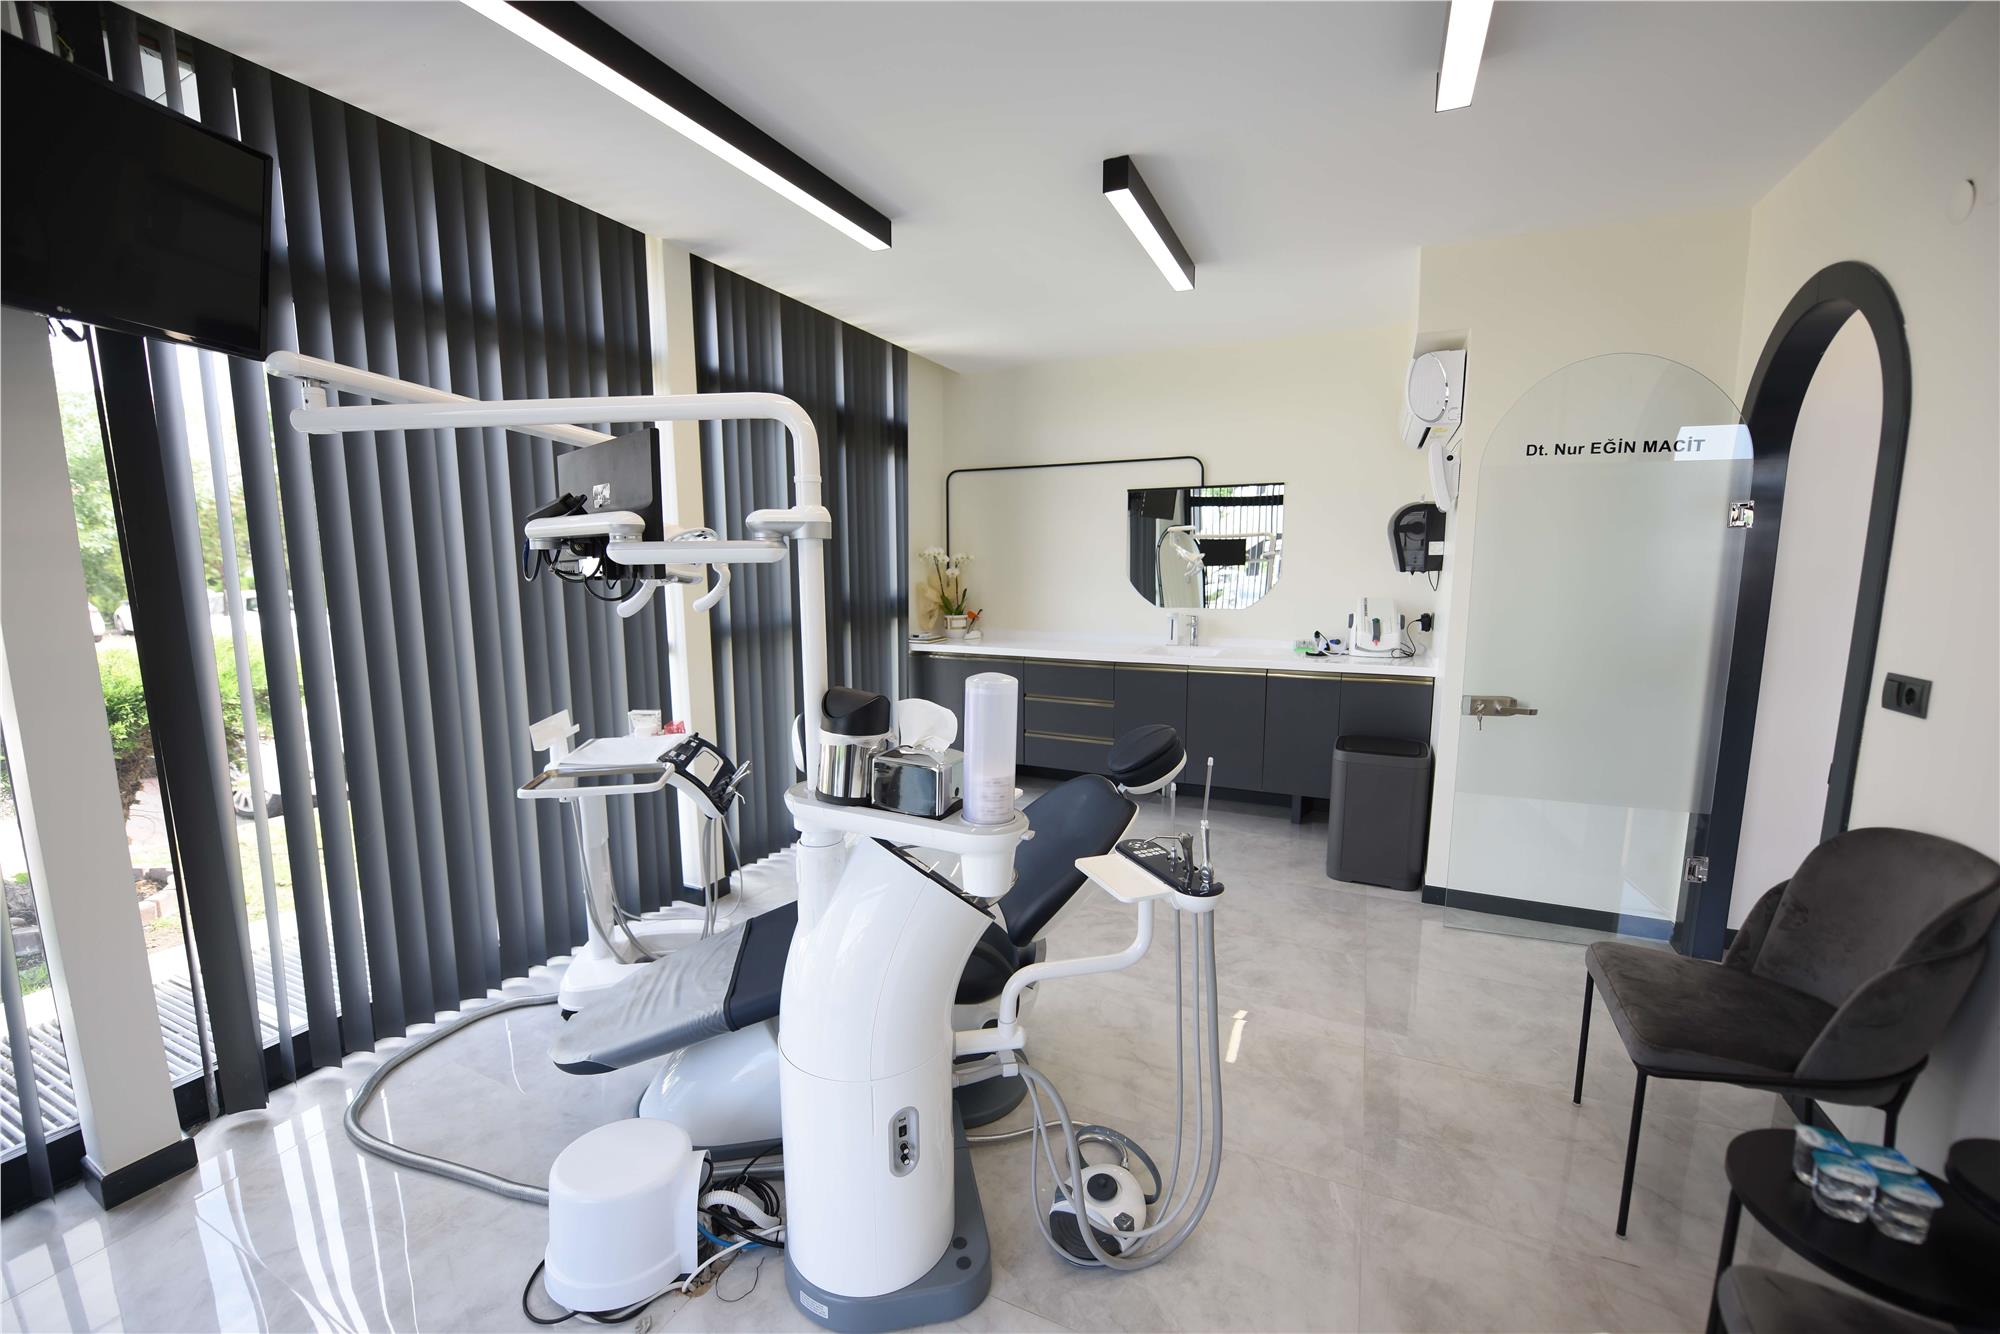 Parladent Uzman Diş Doktorları ve Yeni Nesil Cihaz Teknolojileri ile Sizi Sağlığınızla Buluştuyor 